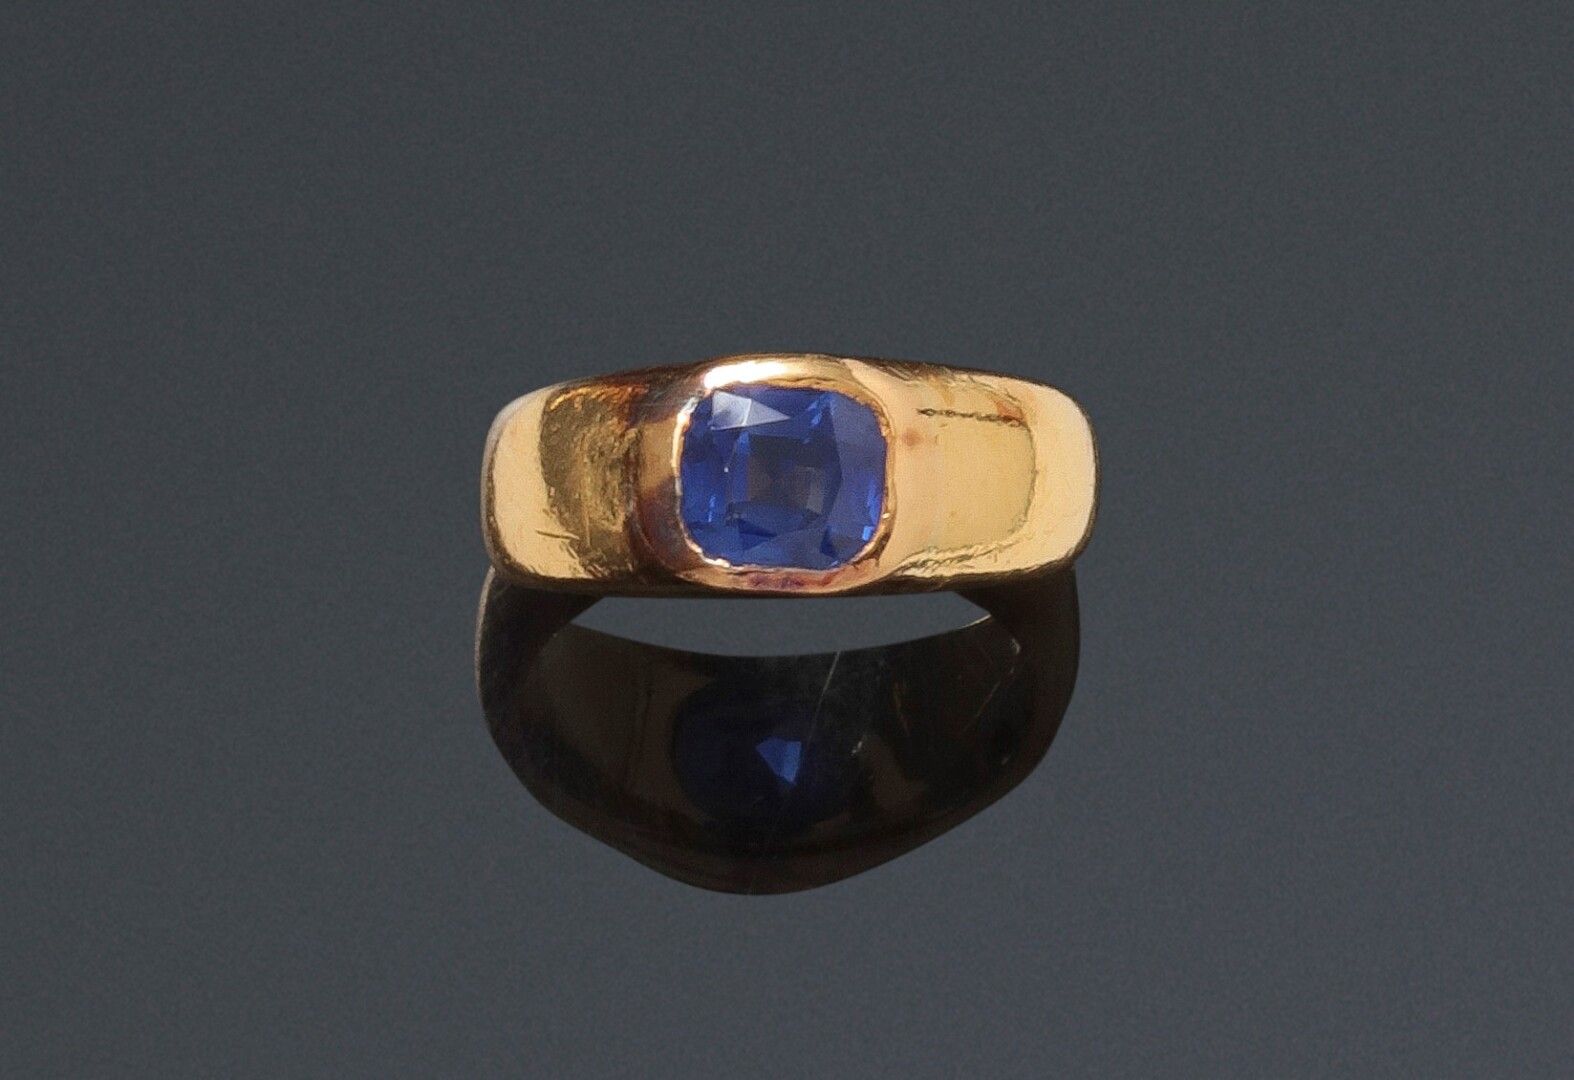 Null 黄金戒托上镶有枕形蓝宝石的戒指

有氧化的痕迹）。

重量：8,7克。

蓝宝石的重量：约1.80克拉。

(有轻微裂痕)。